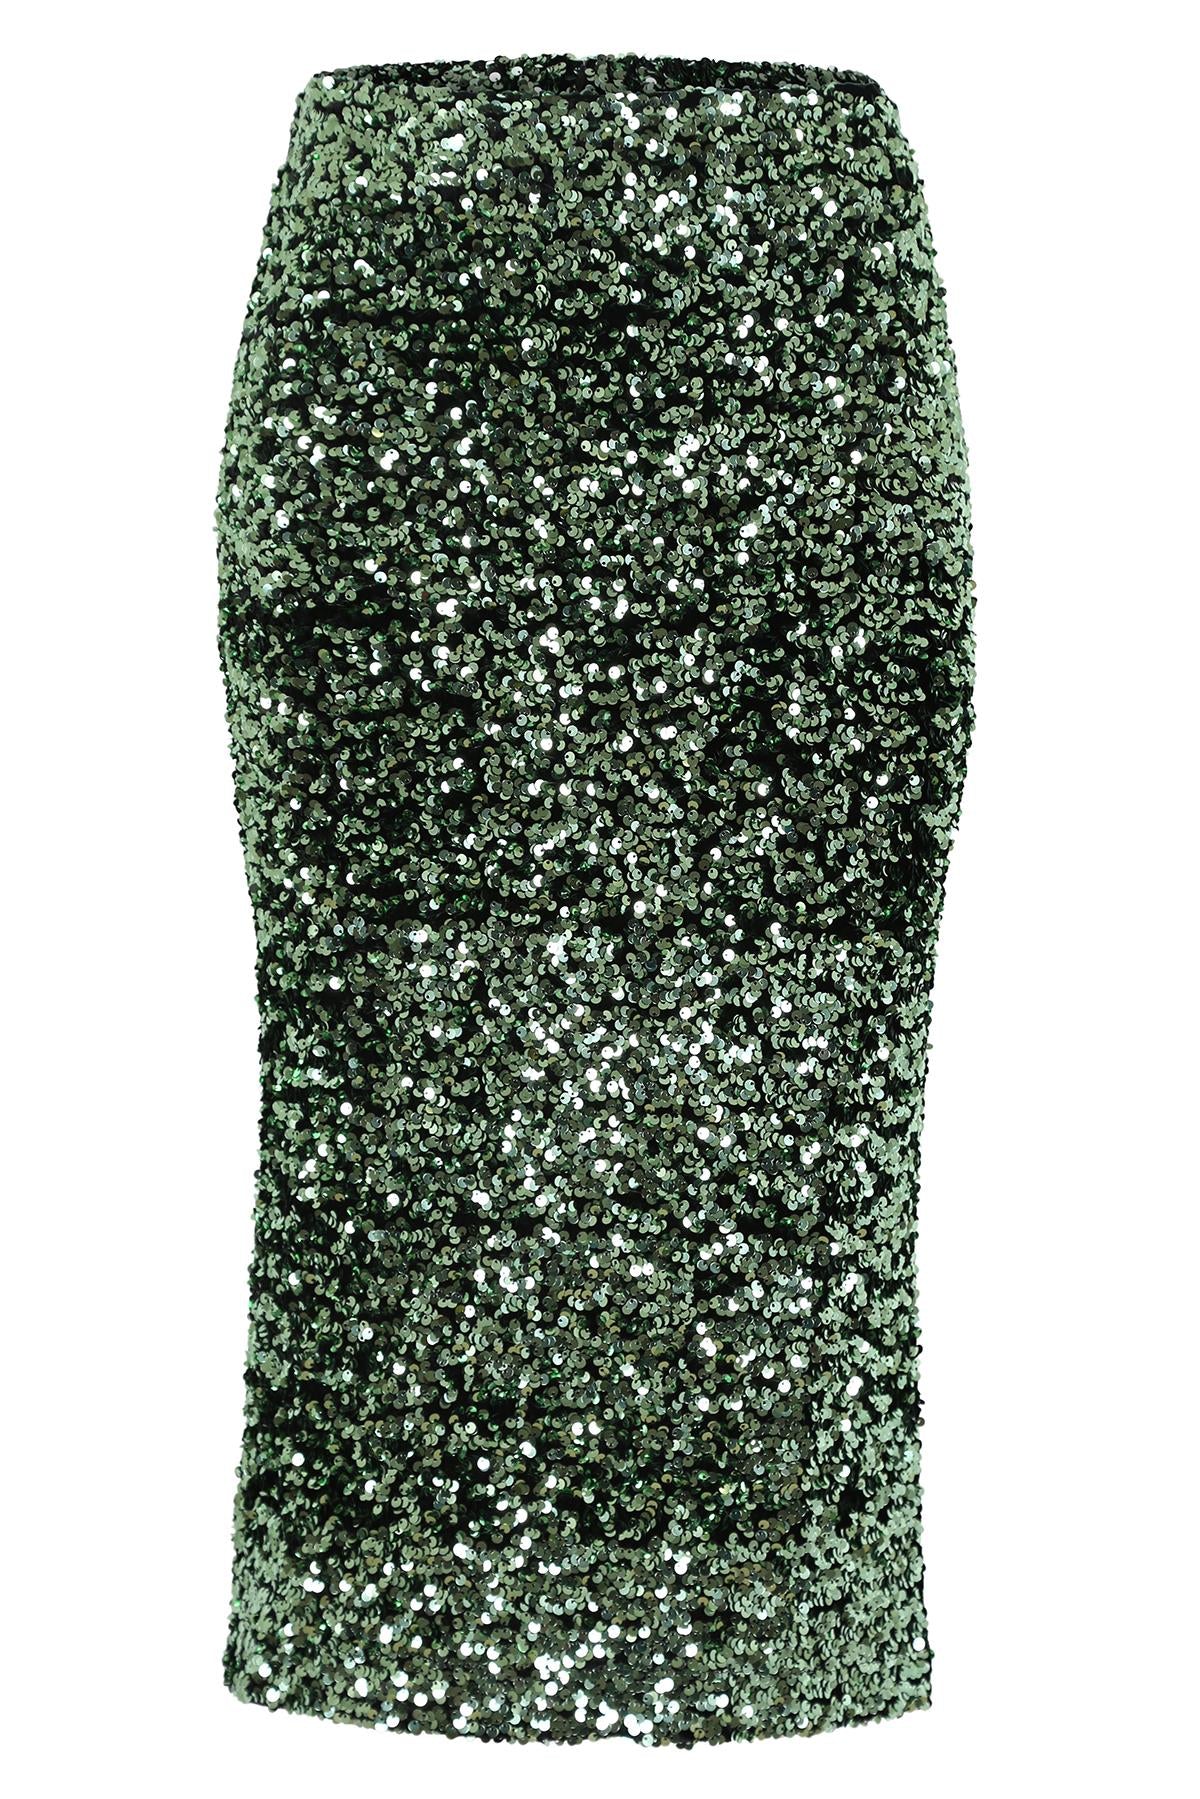 Olga de Polga Jubilee Skirt Sequinned Green